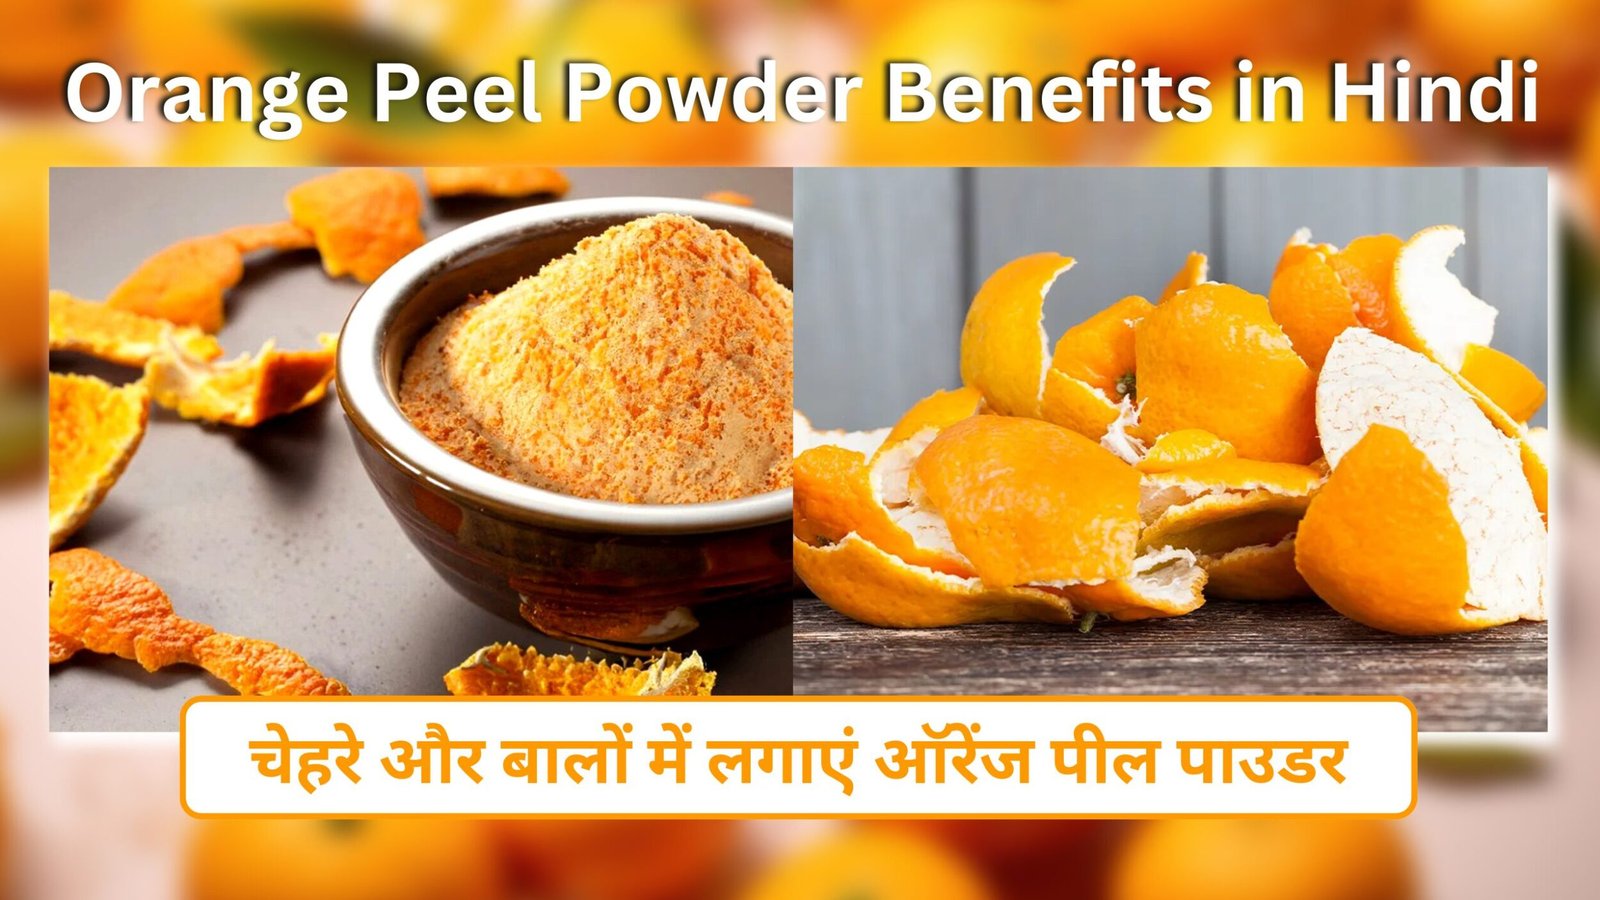 Orange Peel Powder Benefits in Hindi | चेहरे और बालों में लगाएं ऑरेंज पील पाउडर